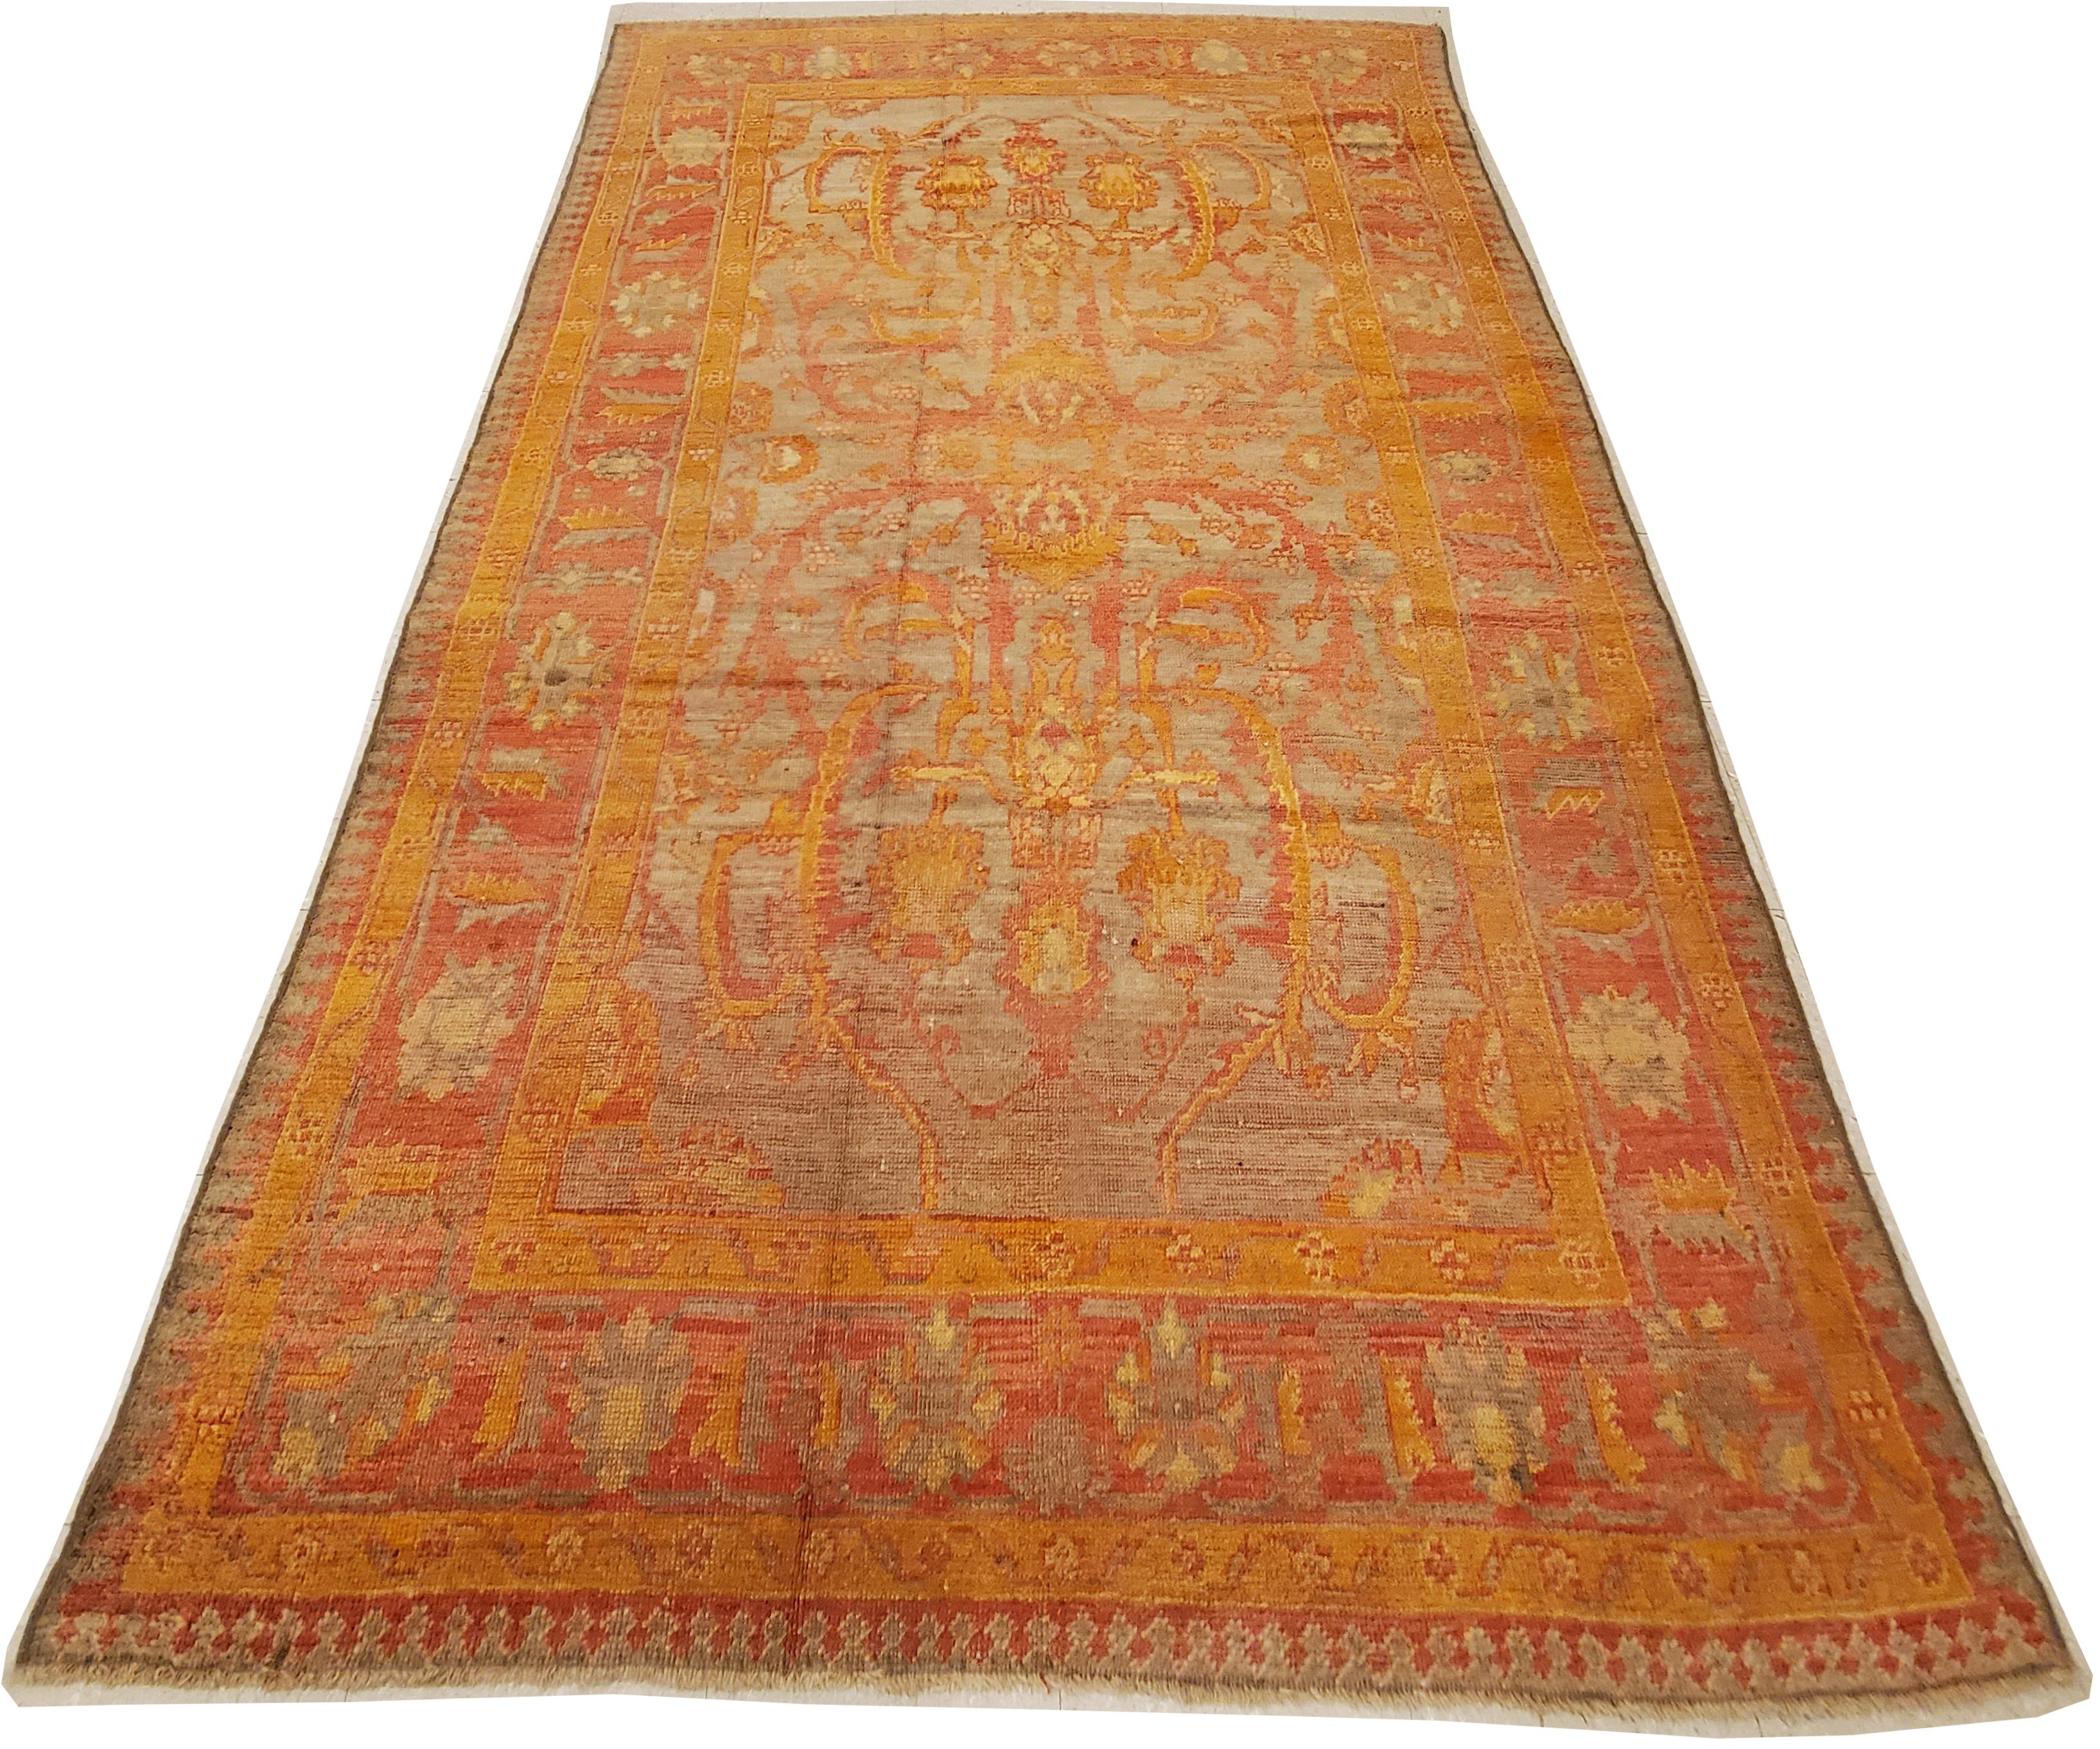 Oushak-Teppiche, die auch als Ushak-Teppiche bekannt sind, werden in der Westtürkei gewebt und haben ausgeprägte Muster, wie z. B. eckige, großflächige Blumenmuster. In der Regel verbreiten sie Ruhe und Frieden in einem Raum. Bis heute werden die